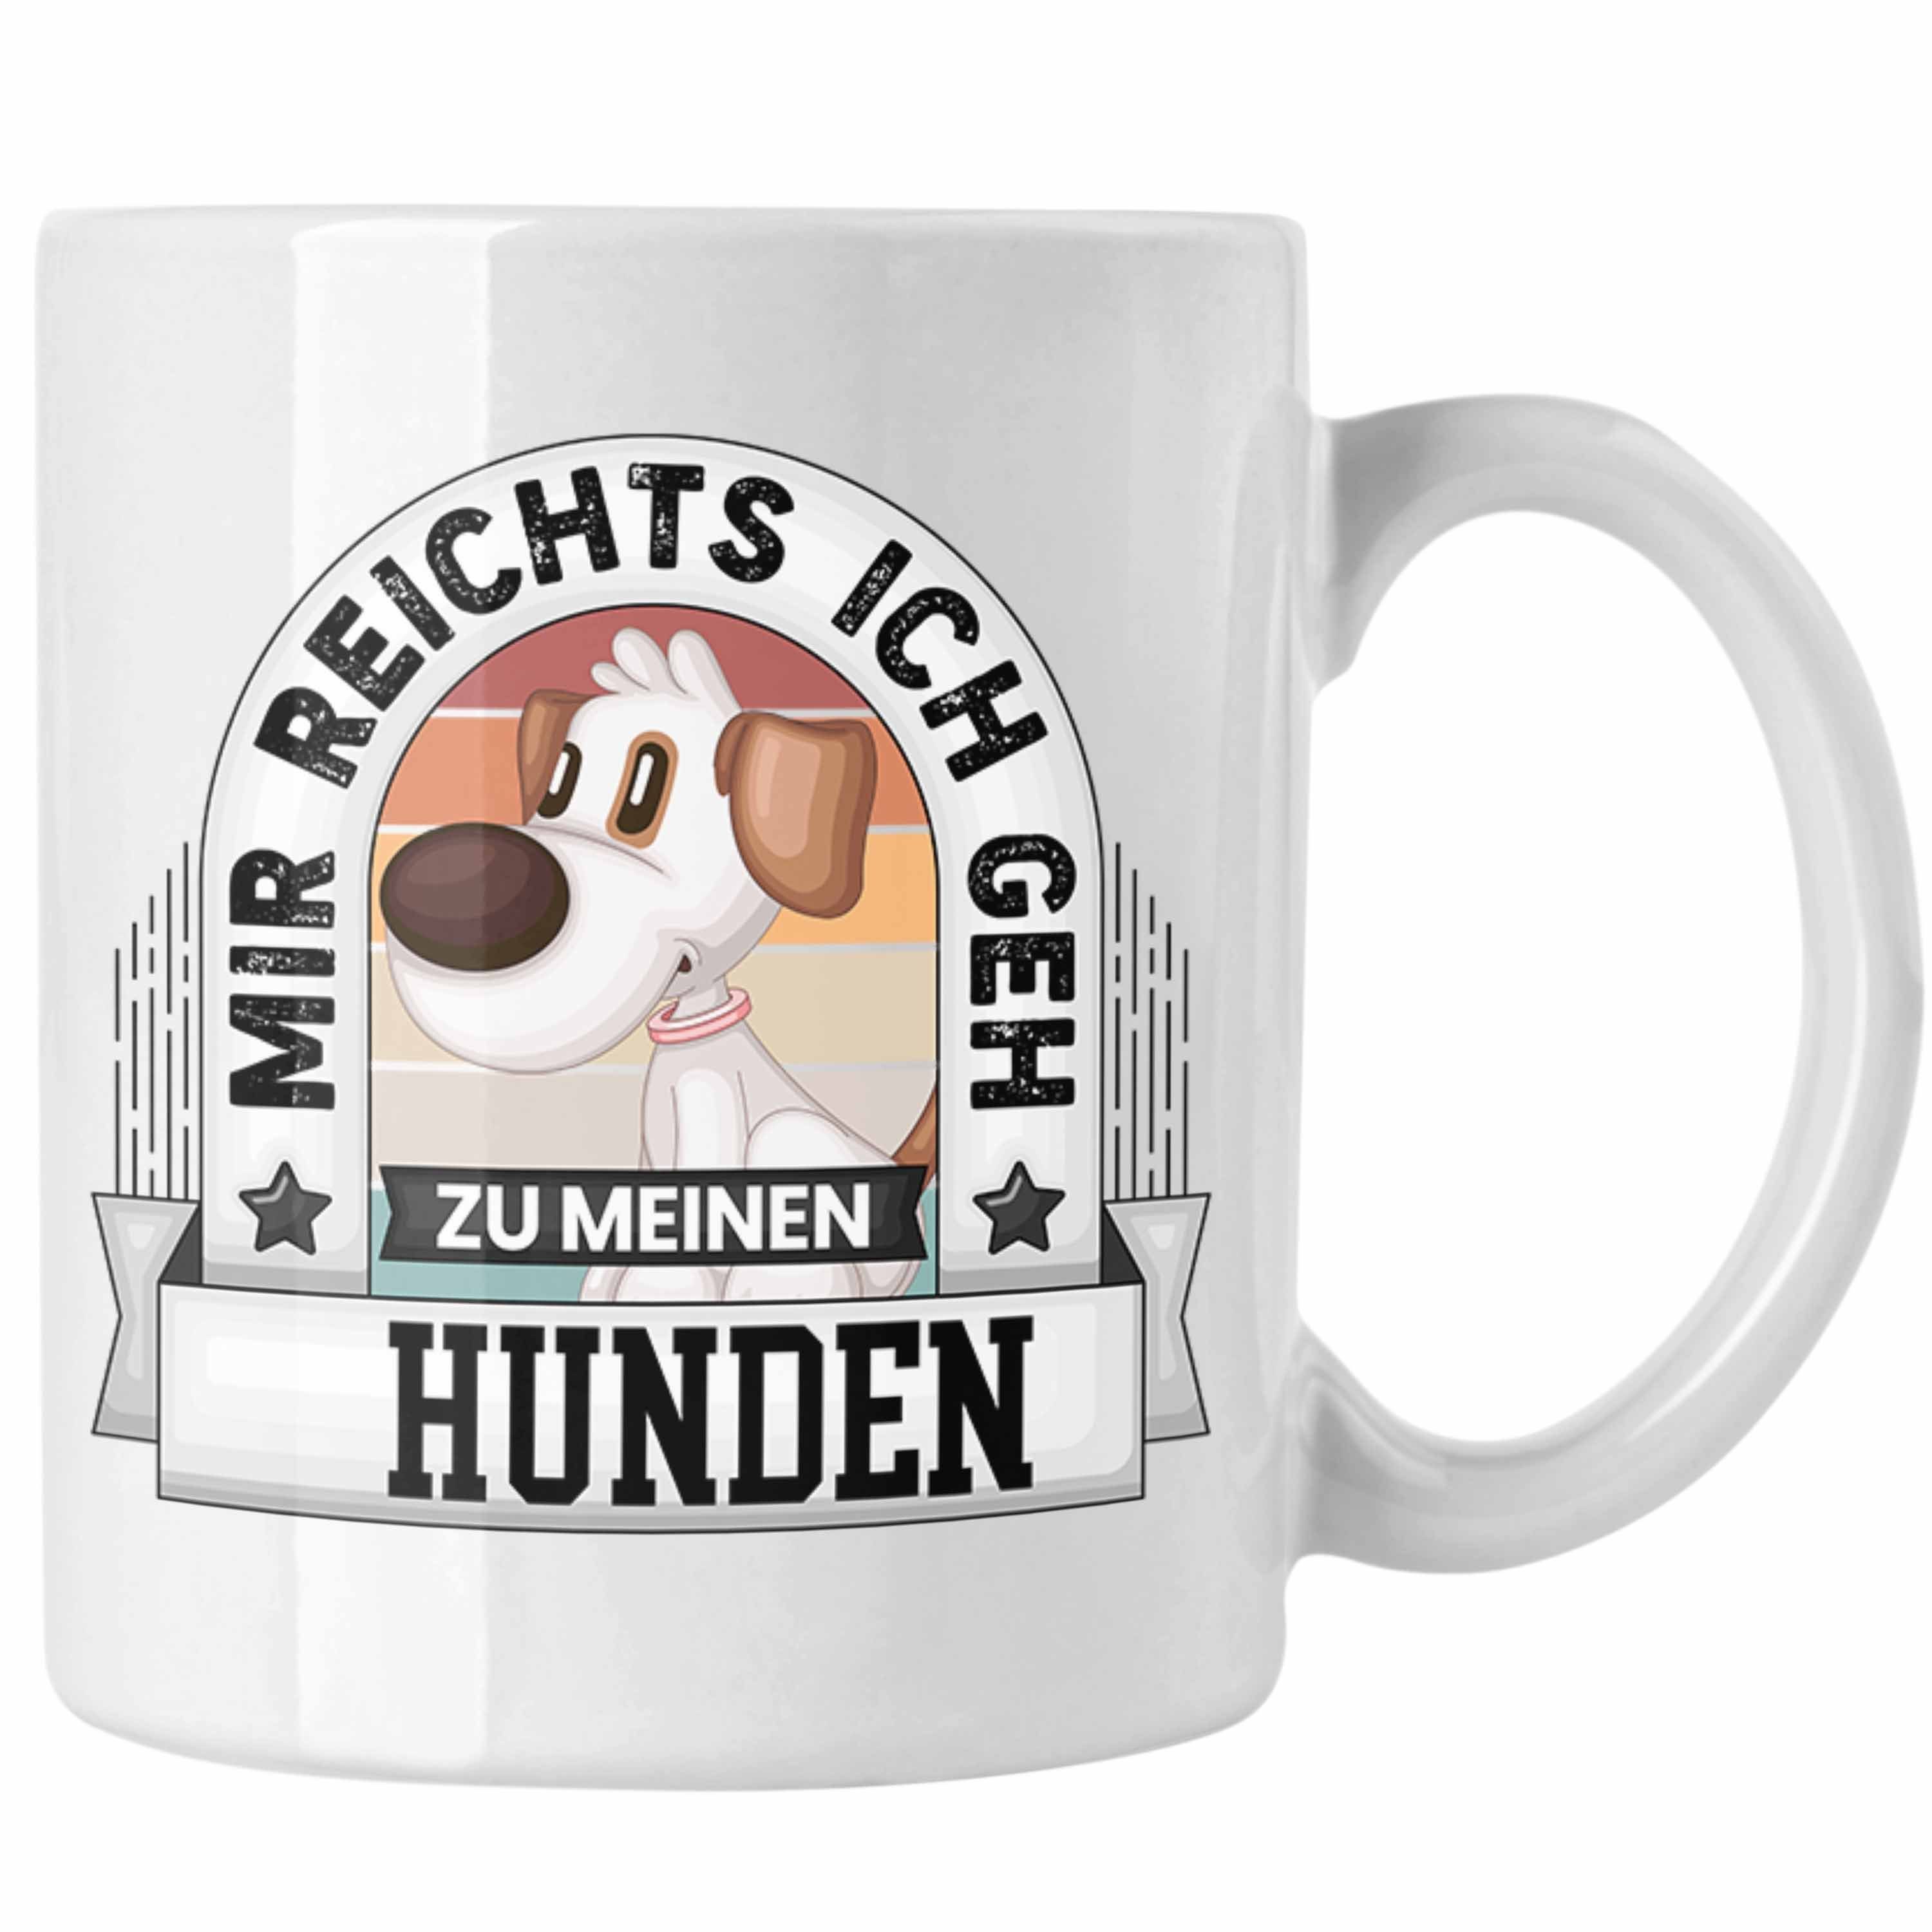 Ich Hundebesitzer Trendation Mir Tasse Spruch Geschenk Lustiger Zu Weiss Reichts Me Geh Tasse